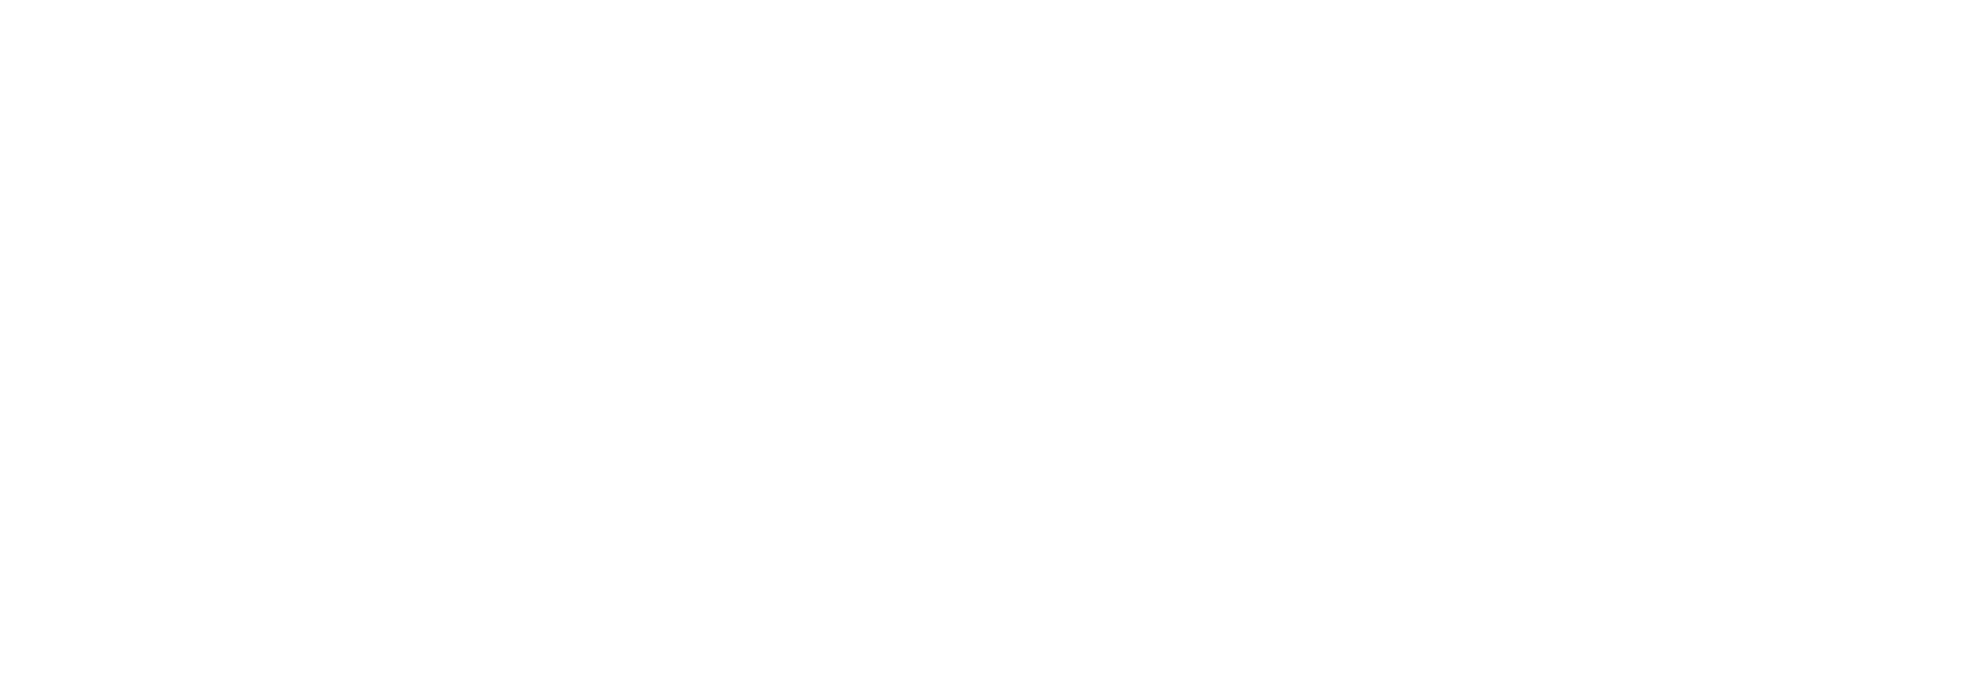 Echelon at 729 & 733 Seward - Seward Collective